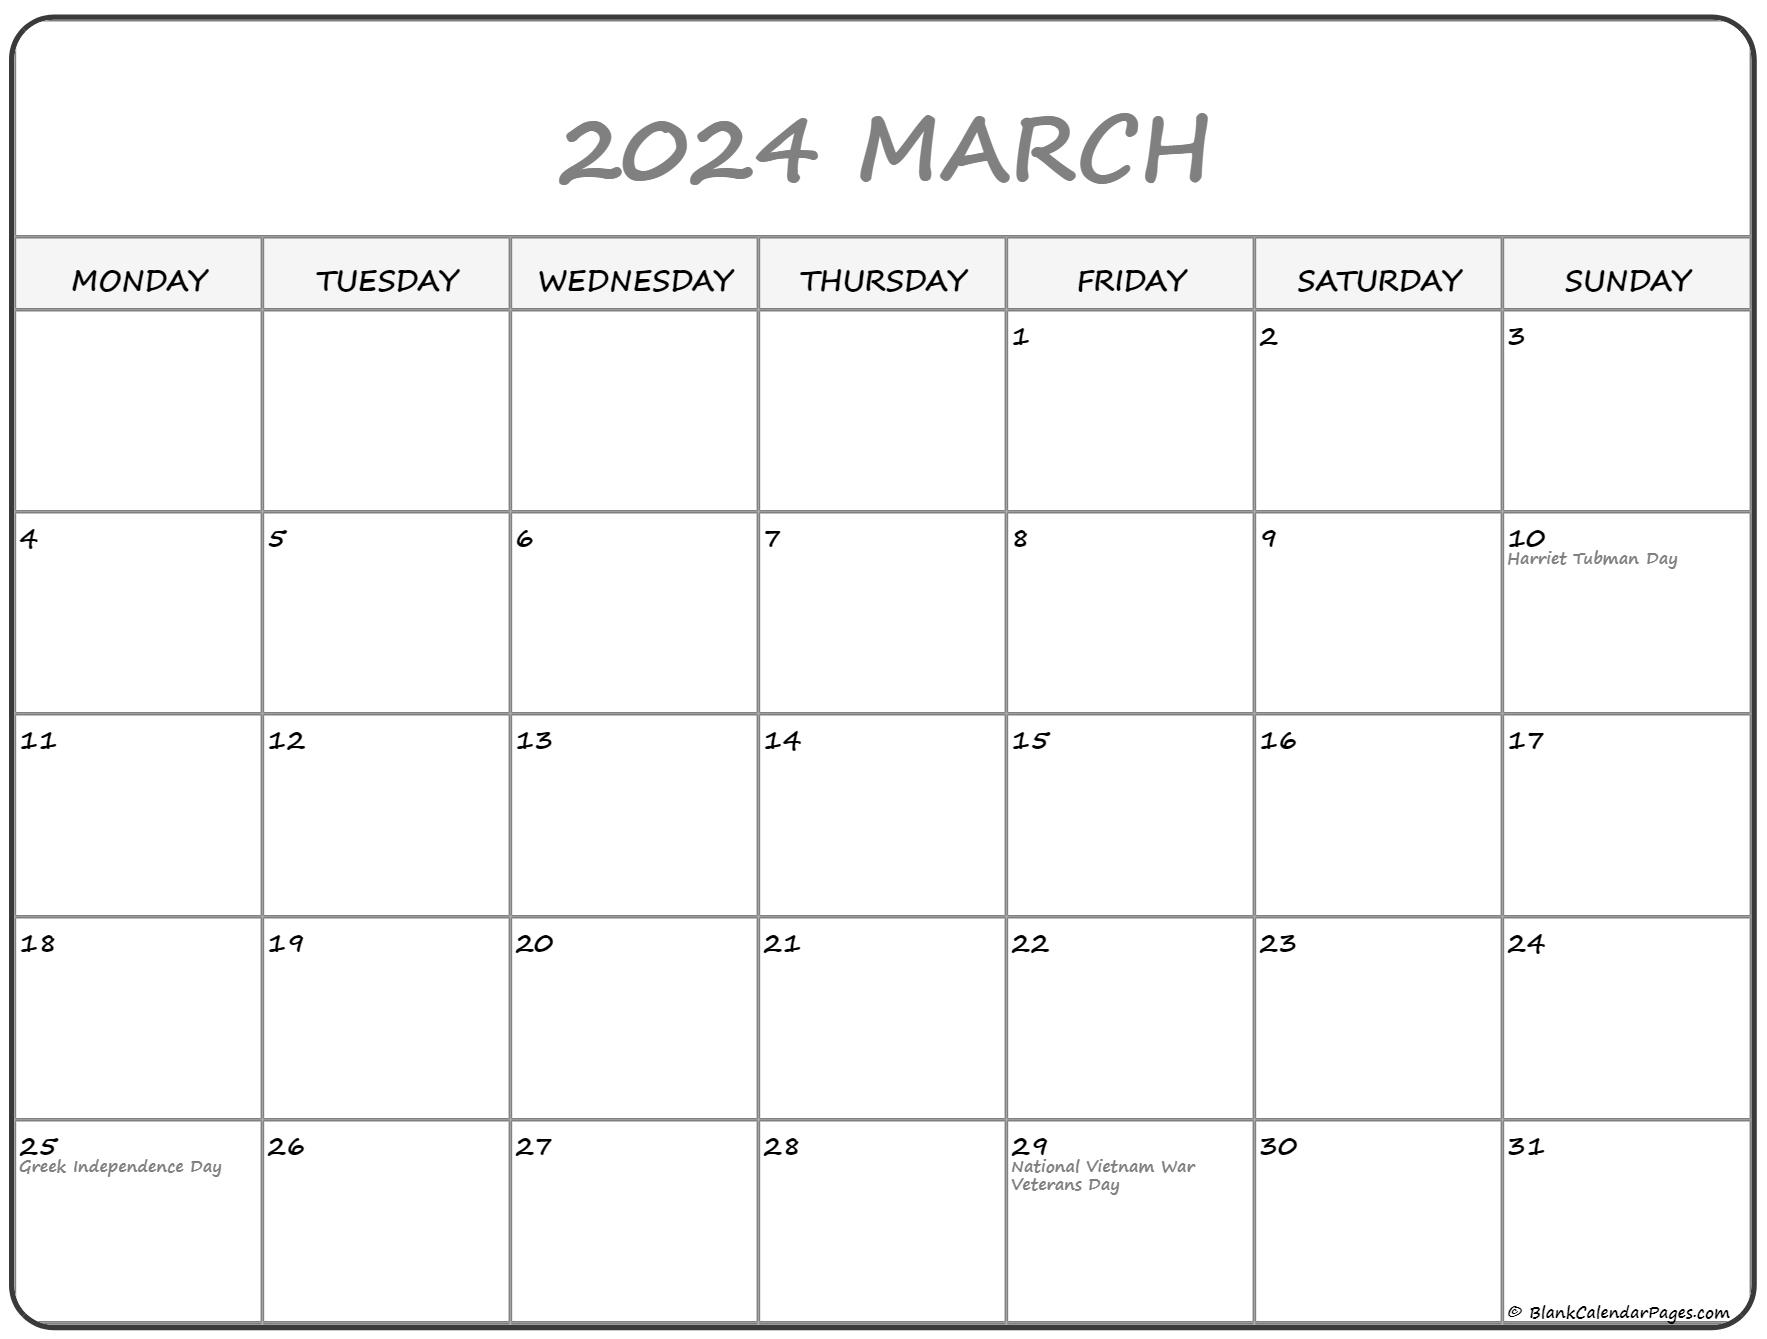 march-2023-calendar-starting-monday-get-calender-2023-update